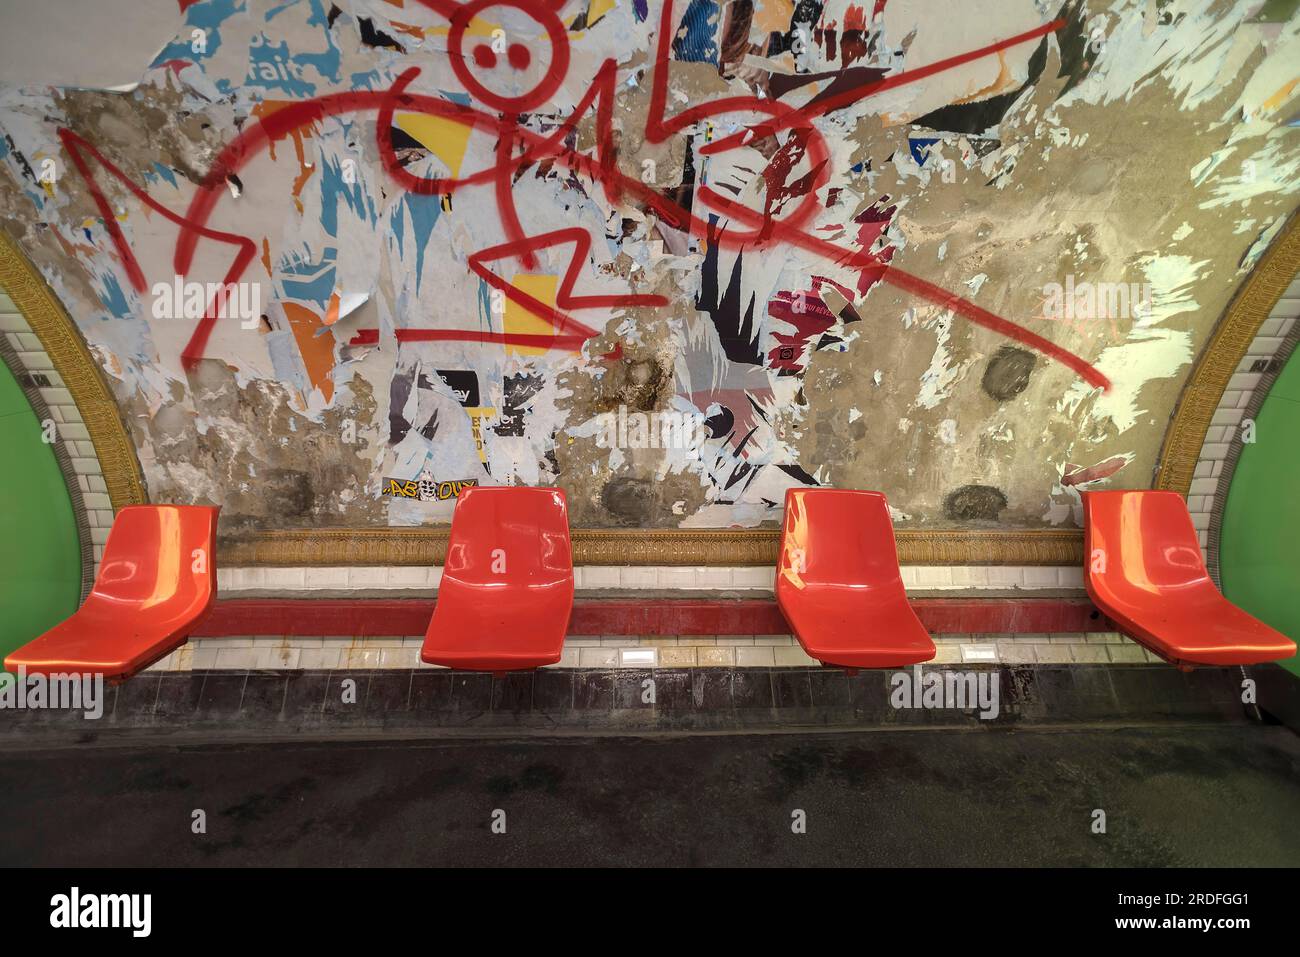 Sièges rouges dans le métro devant un panneau d'affichage démoli, Paris, France, délabré, graffiti Banque D'Images